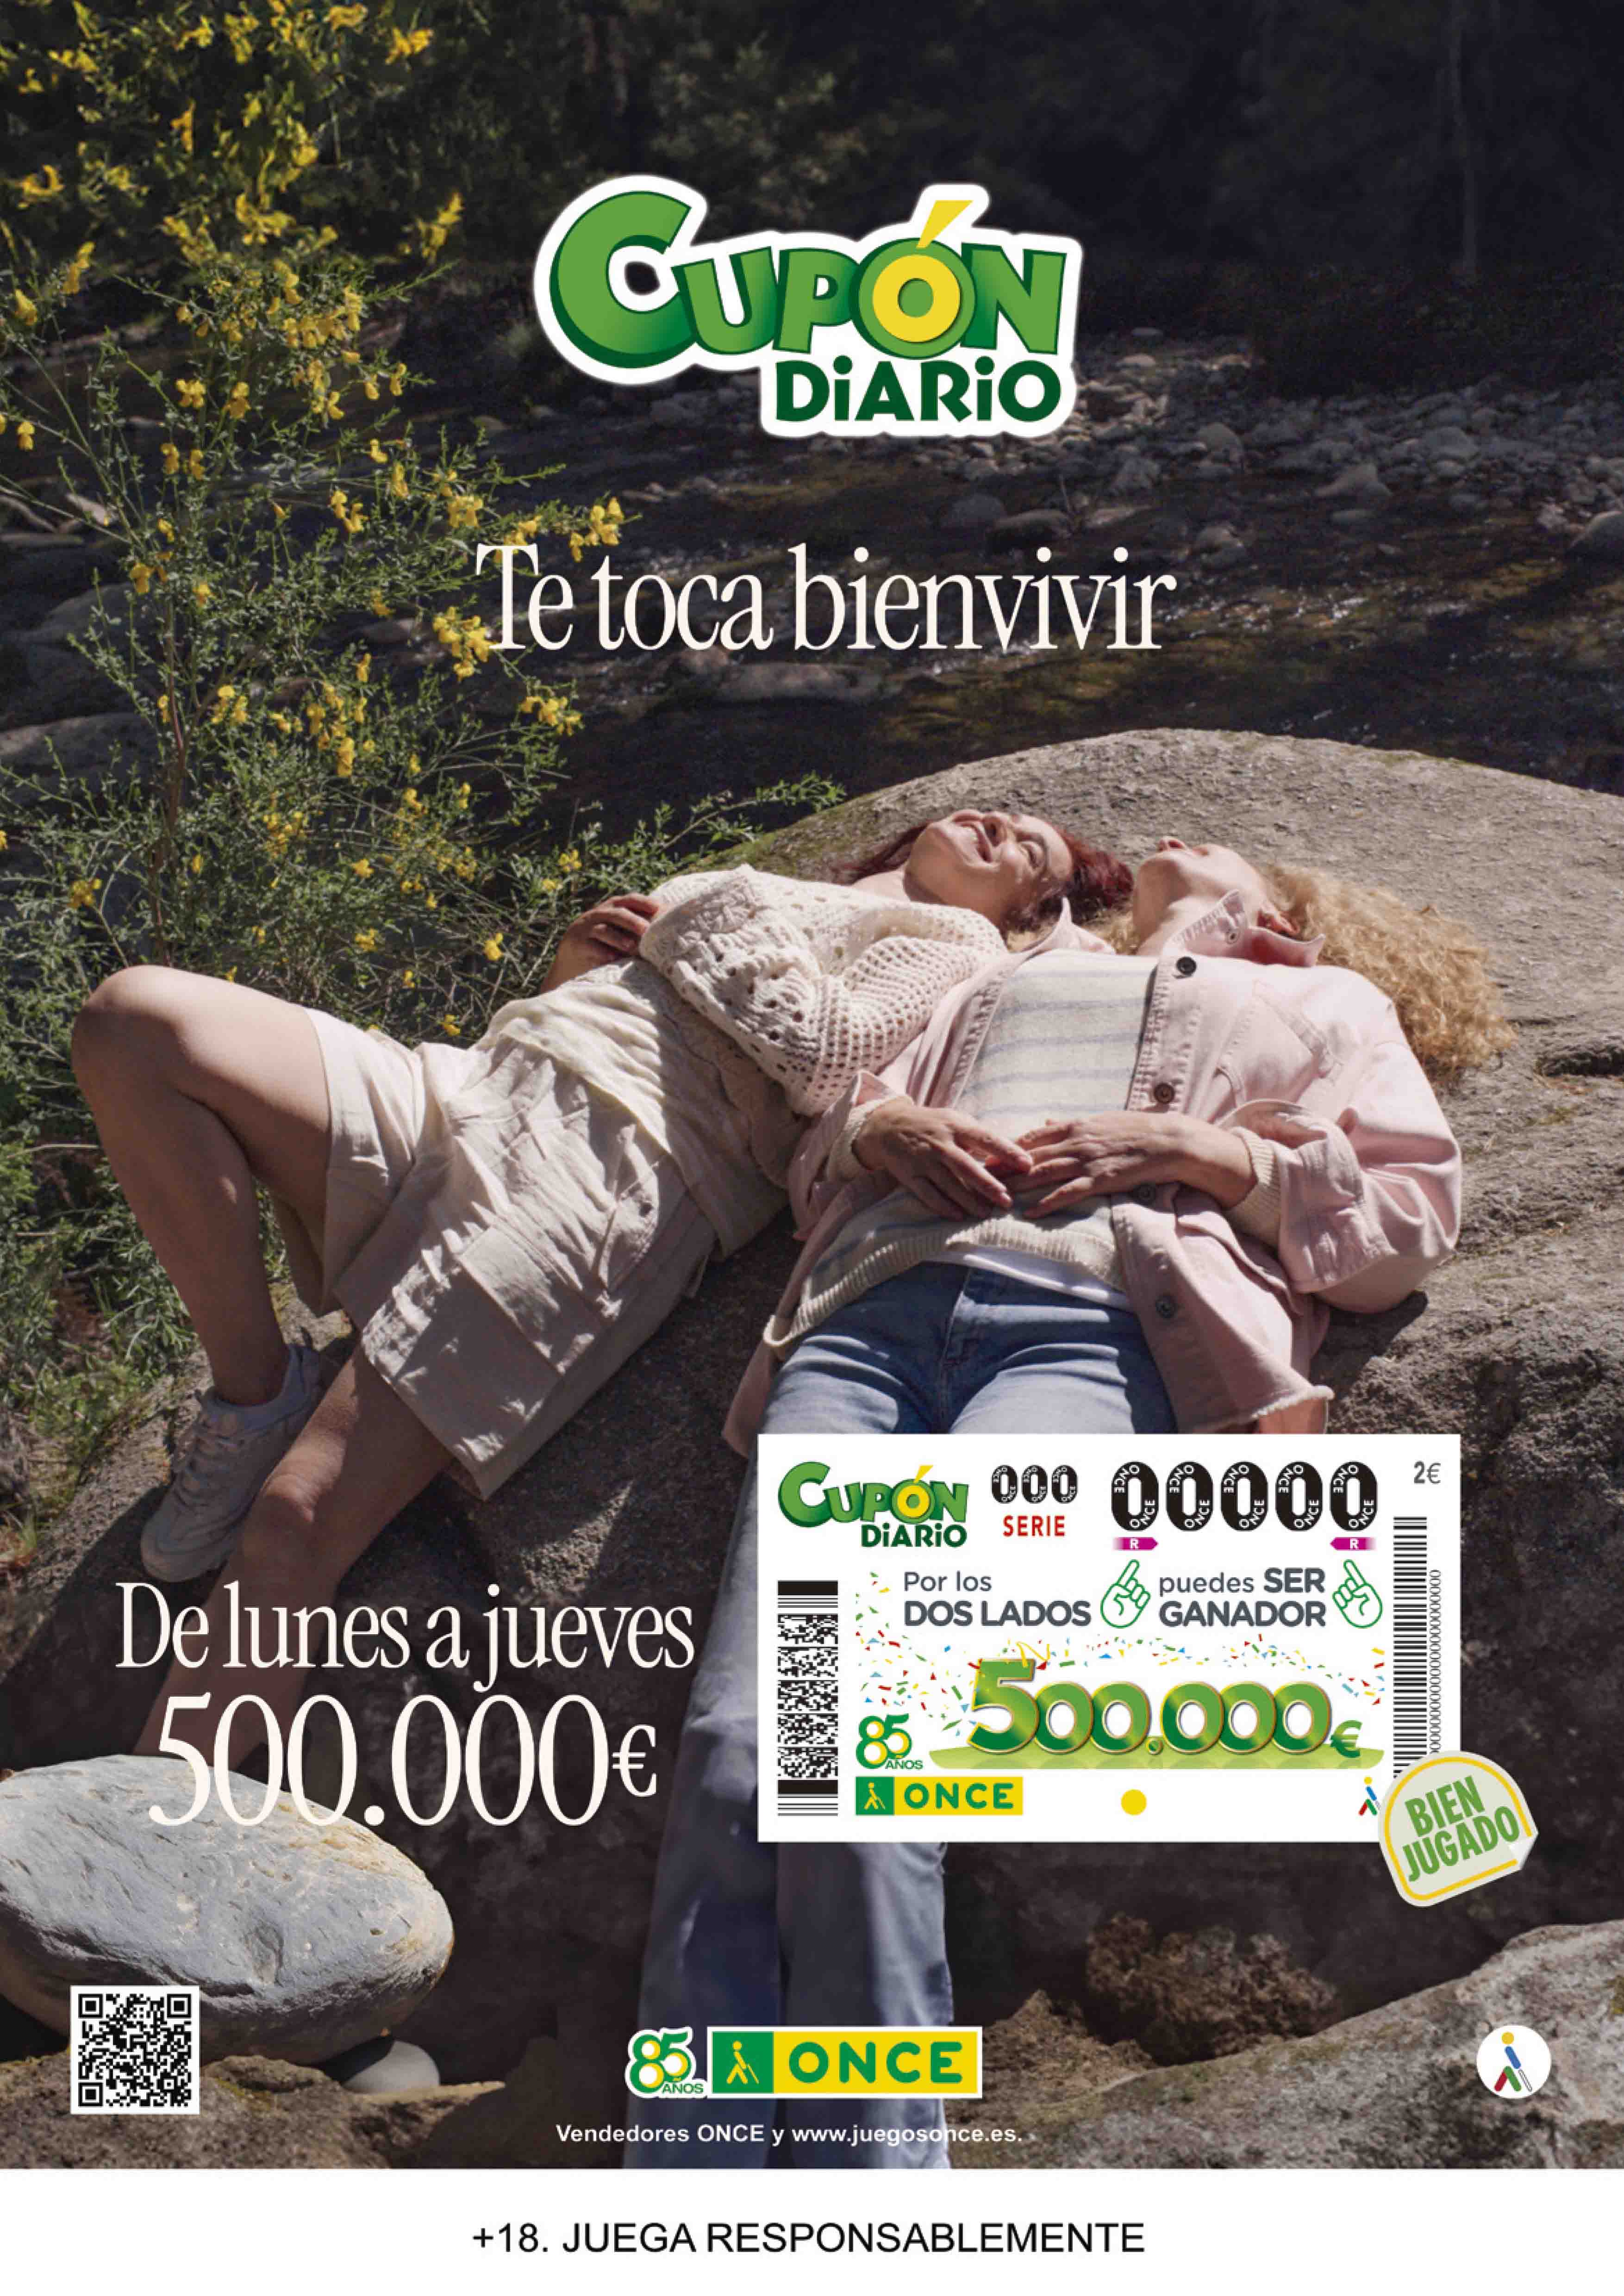 Cartel publicitario Cupón Diario (Abrir en nueva ventana)